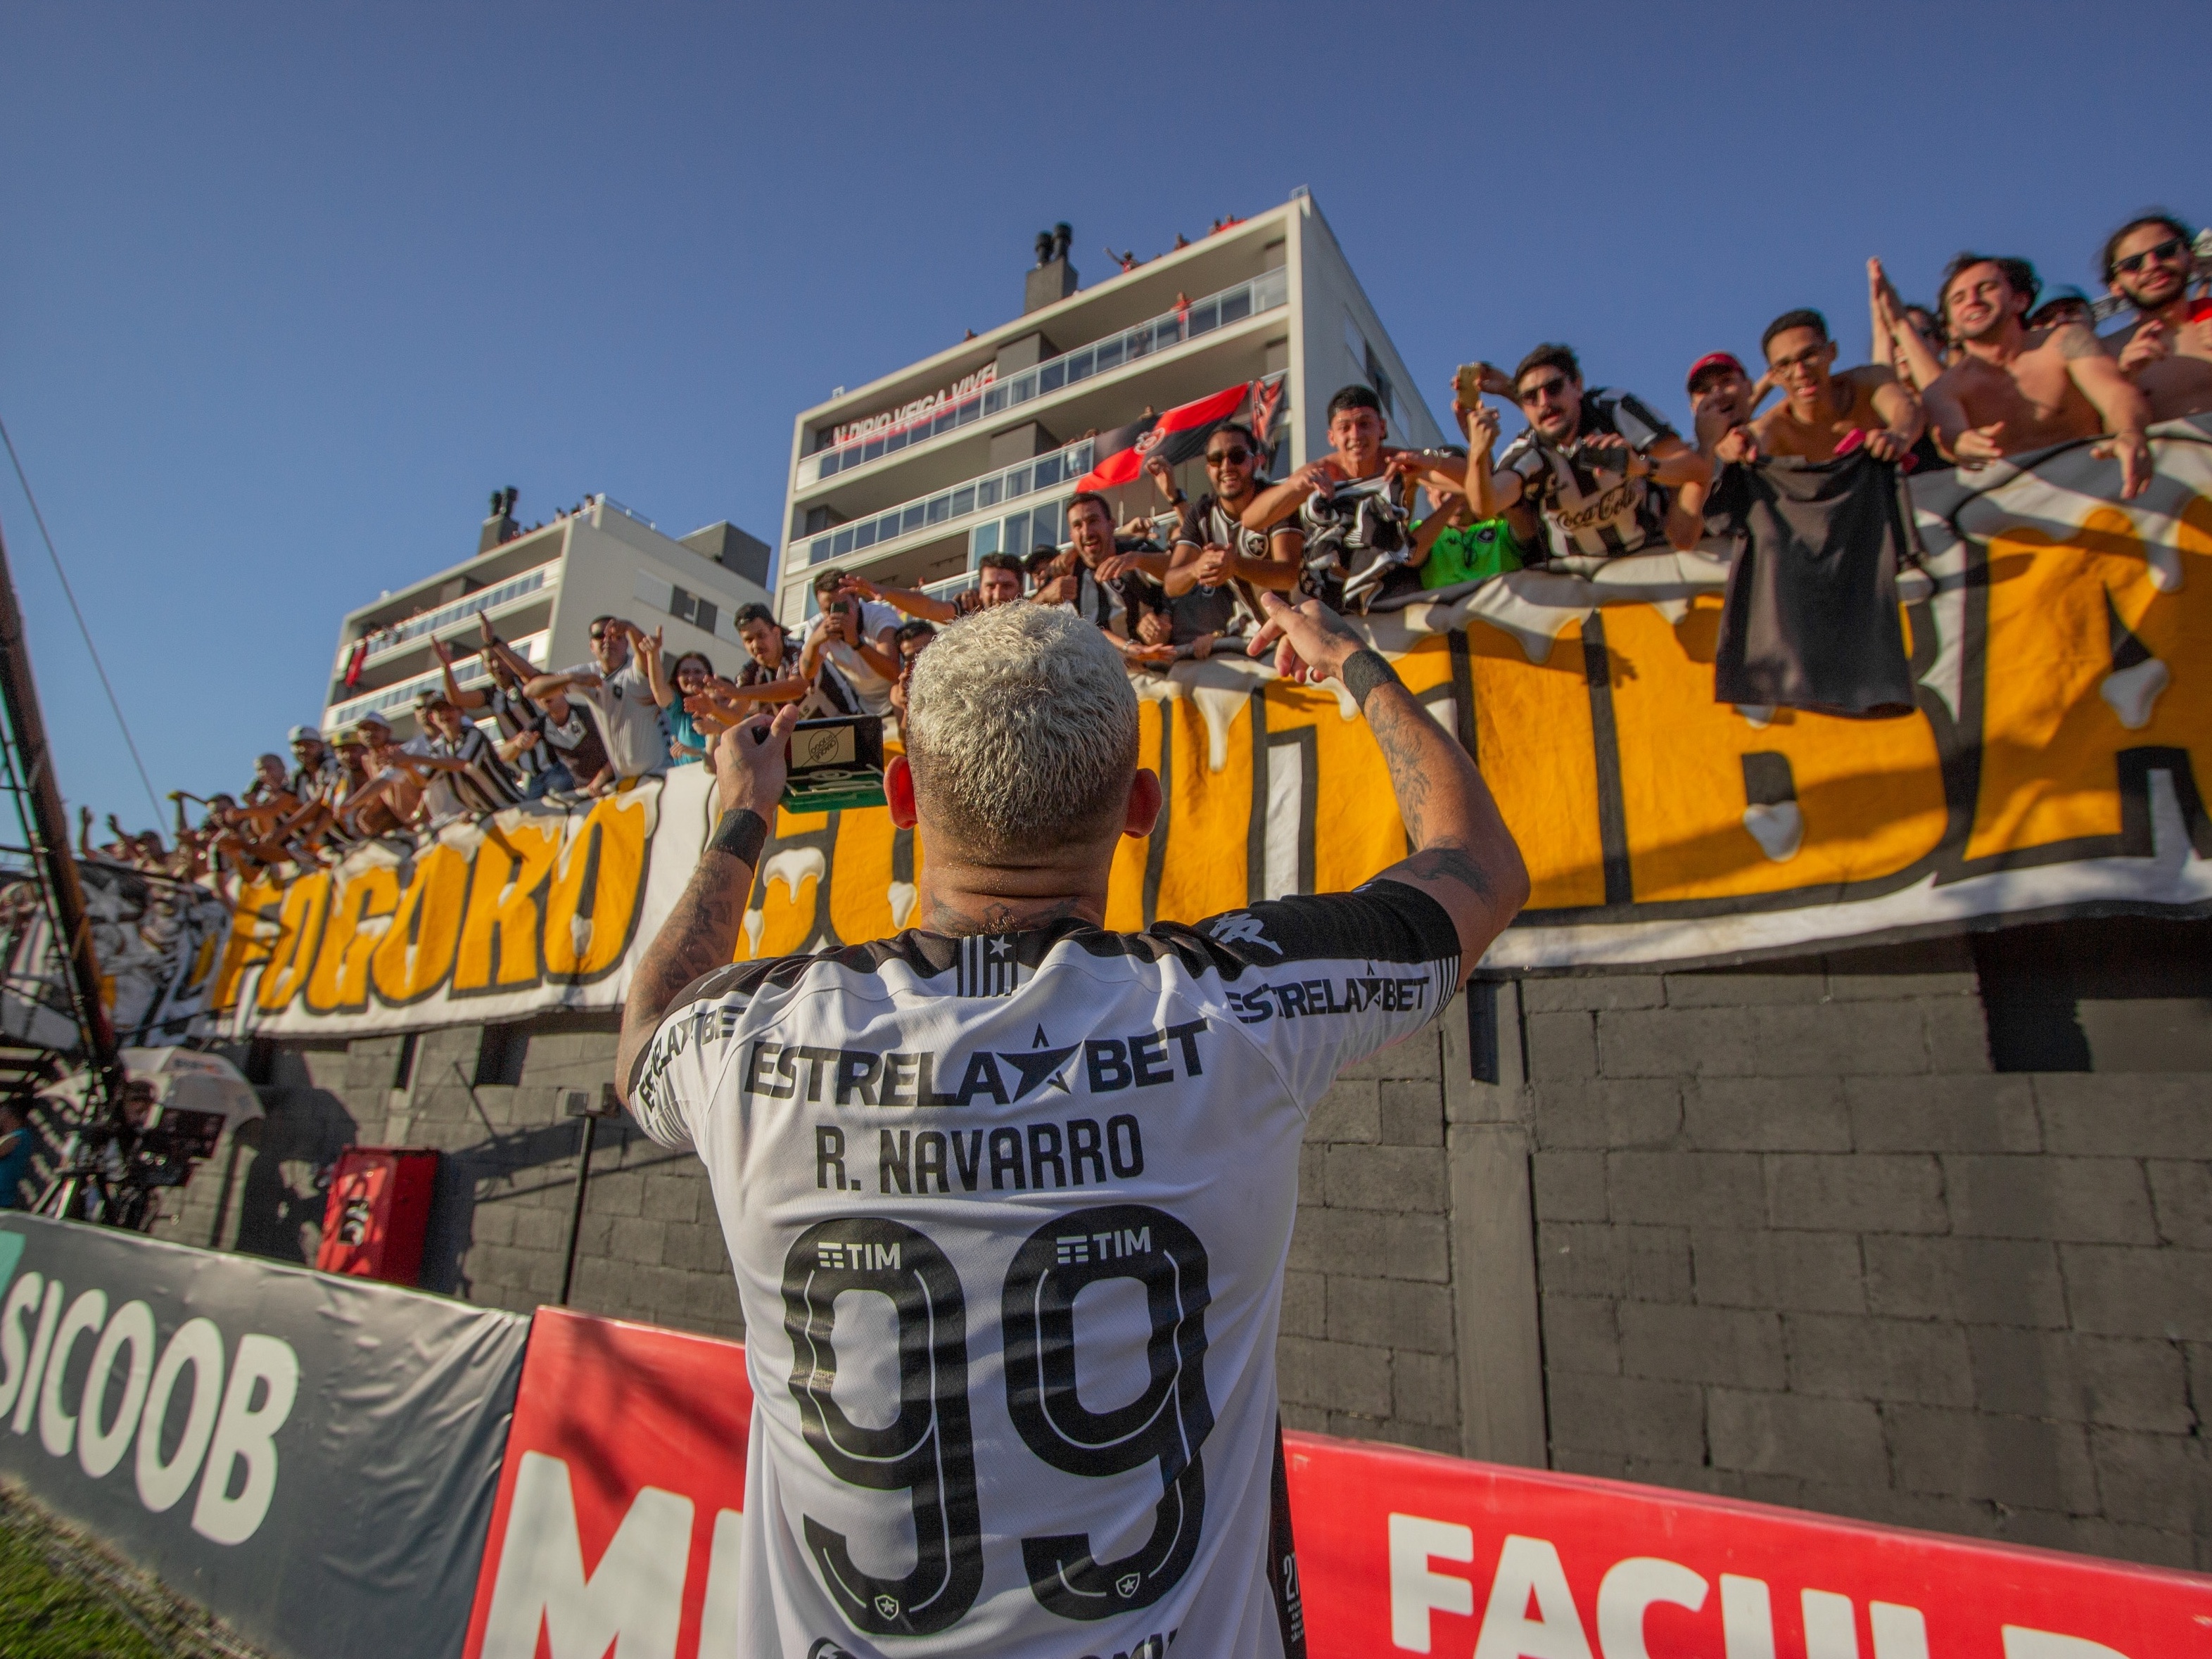 Botafogo vence o Brasil de Pelotas e conquista a Série B pela segunda vez -  21/11/2021 - UOL Esporte